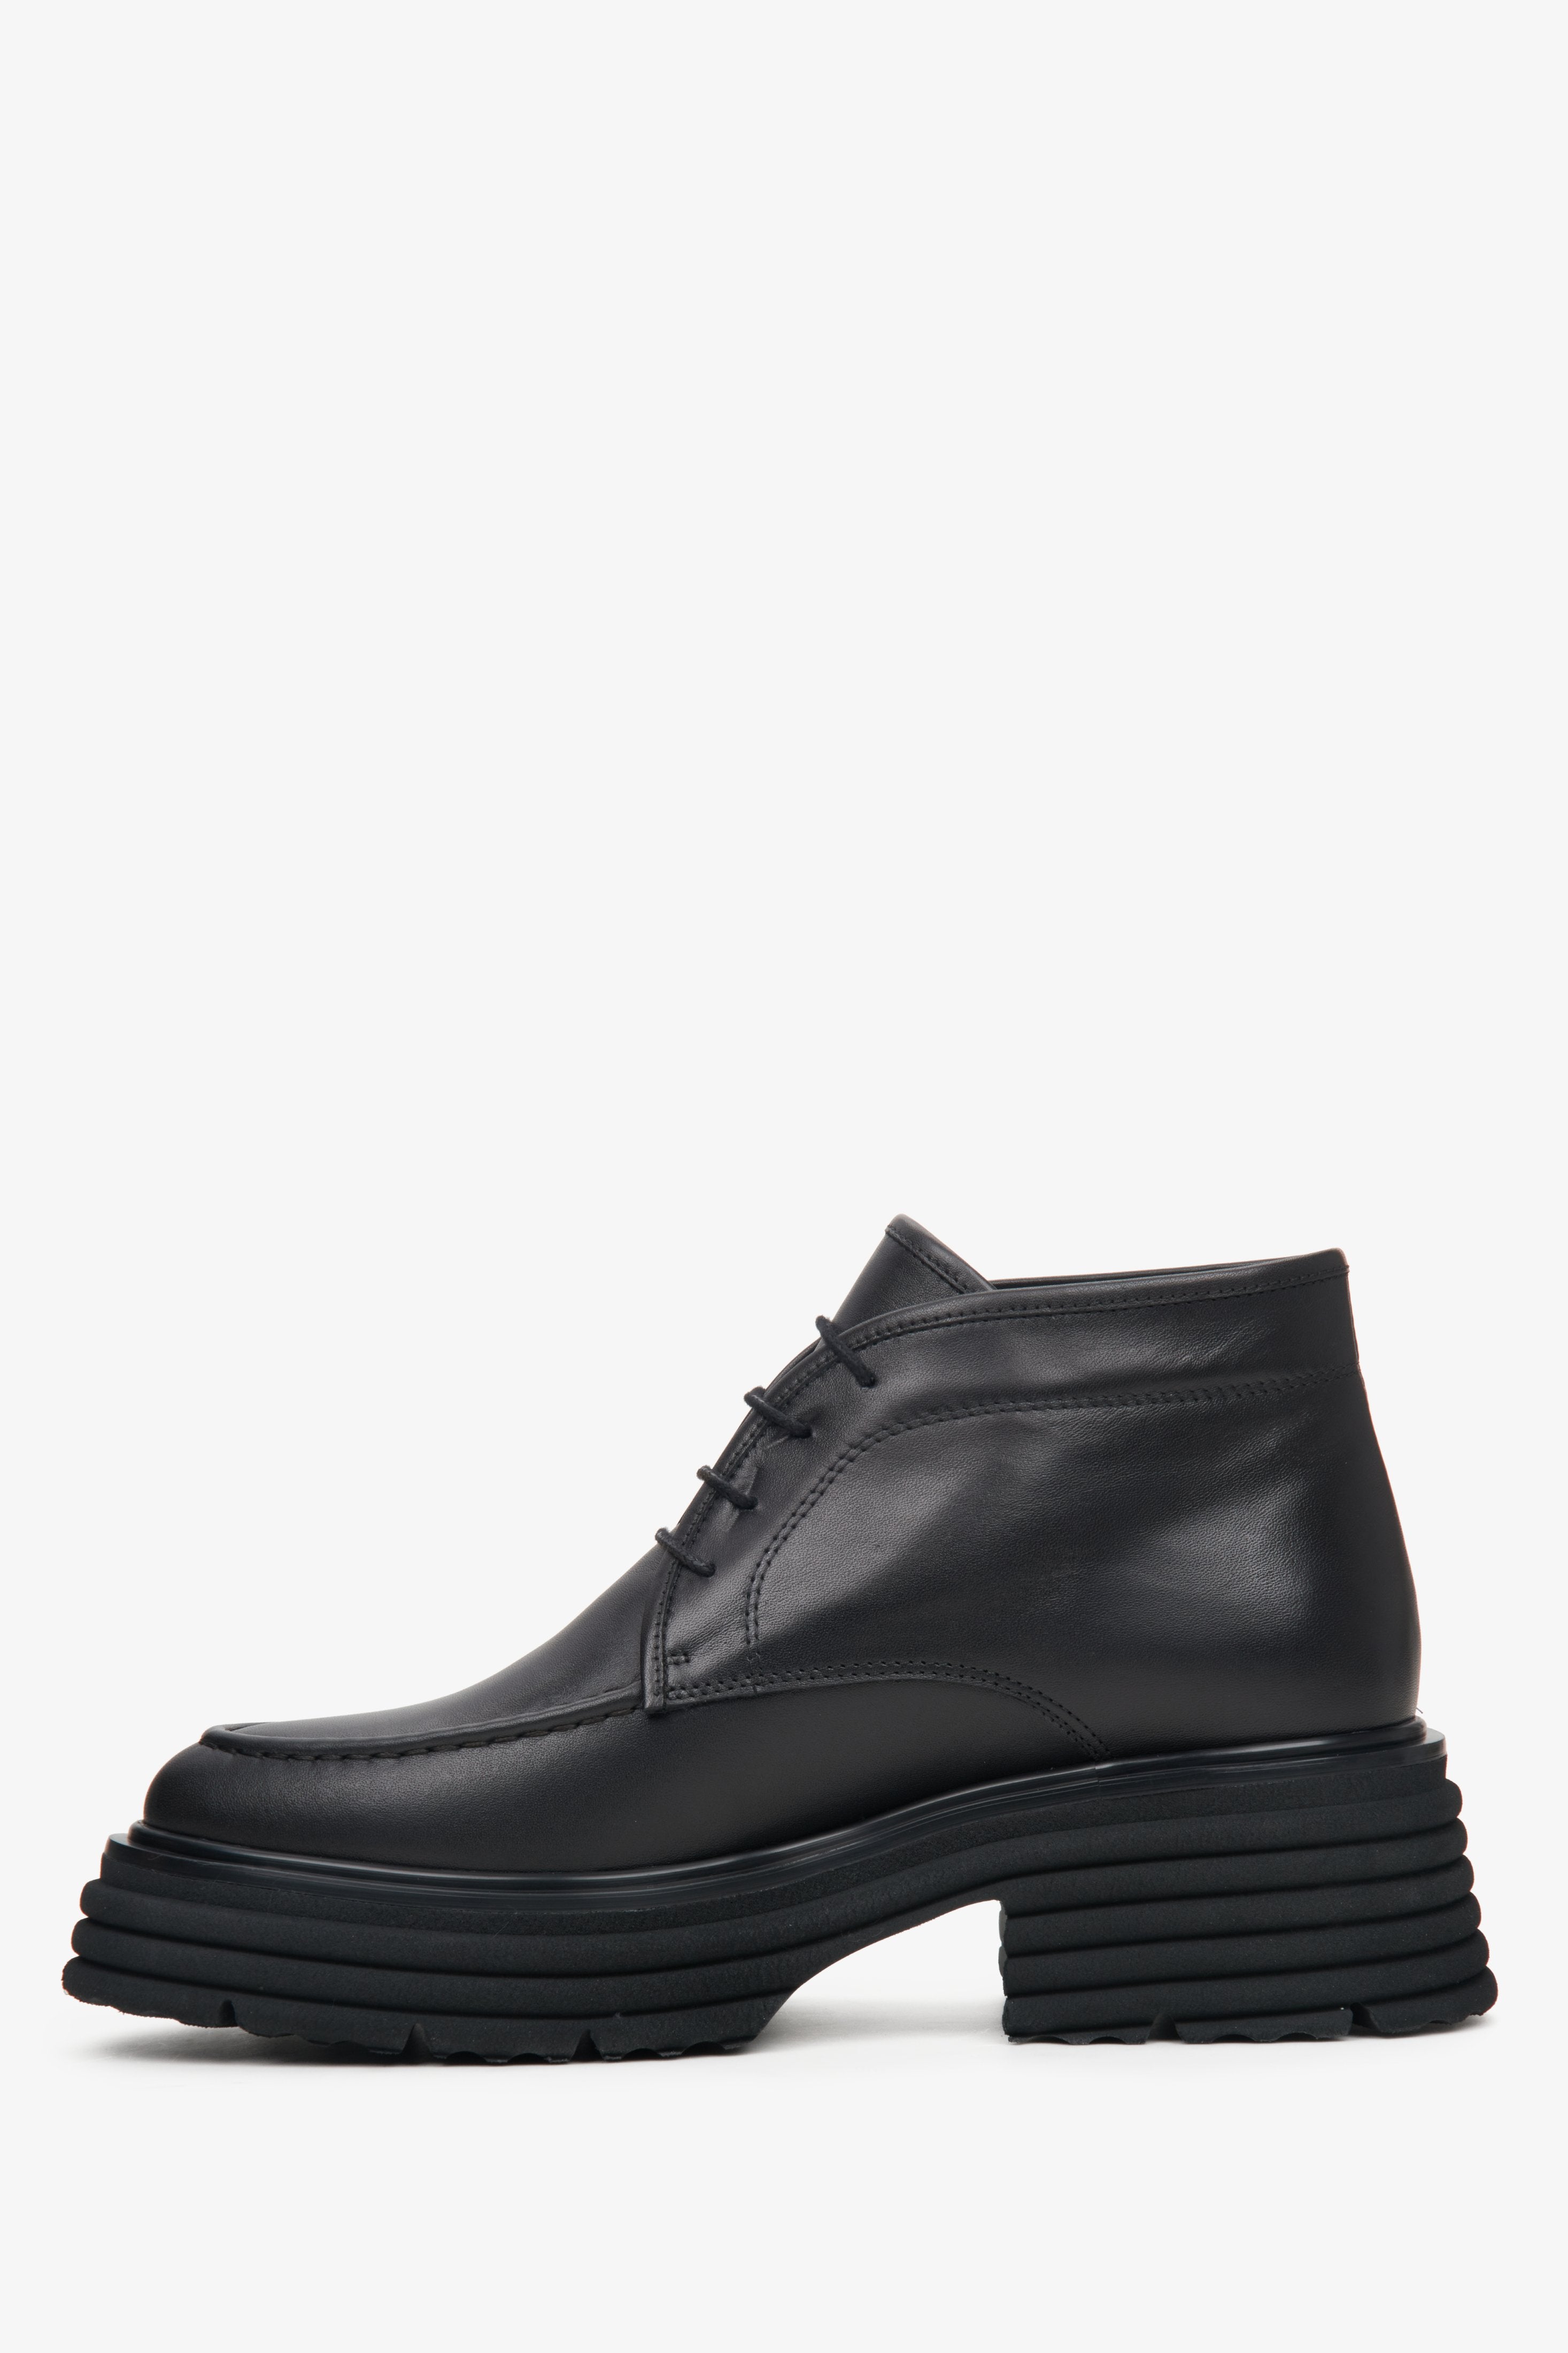 Skórzane czarne botki damskie sznurowane Estro - profil buta.